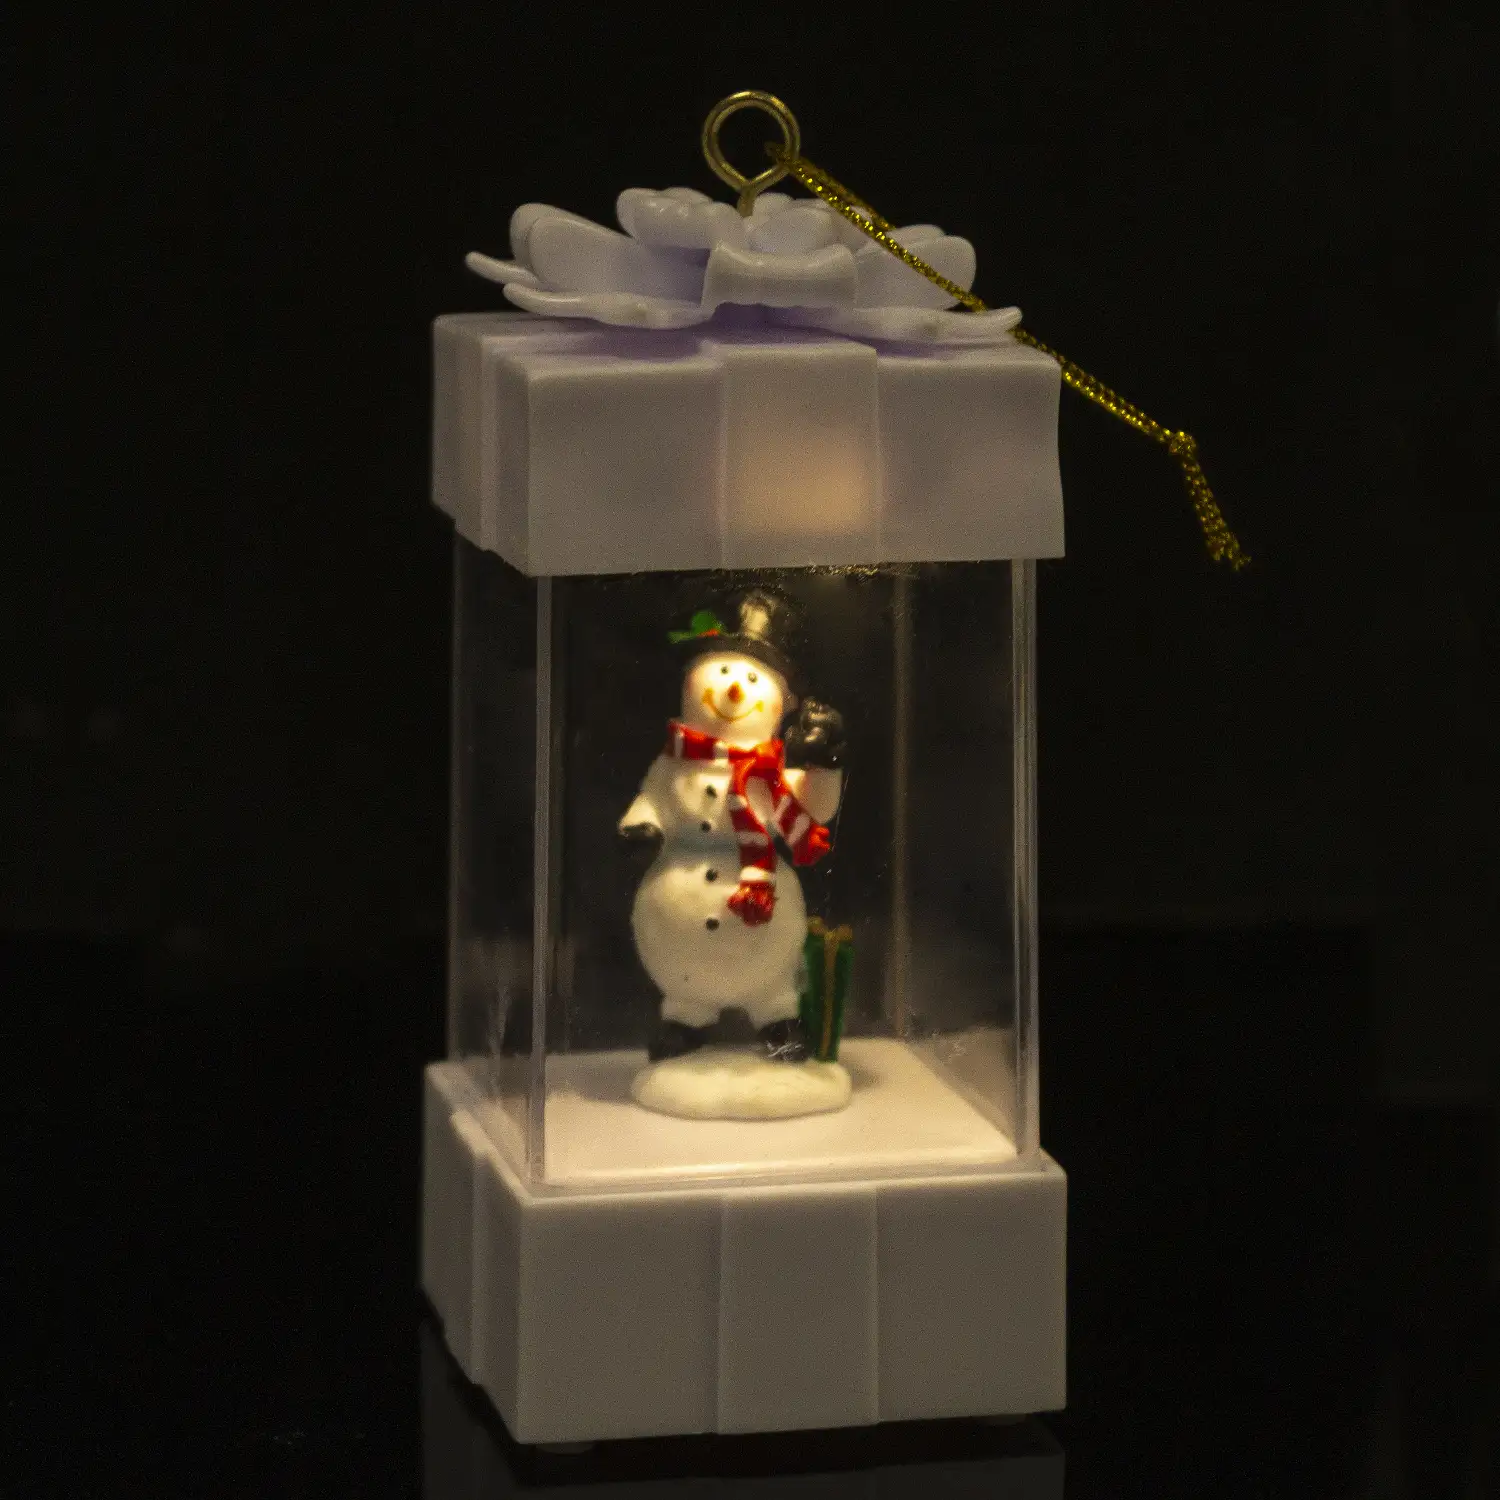 Candil de navidad con luz, diseño regalo con muñeco de nieve.